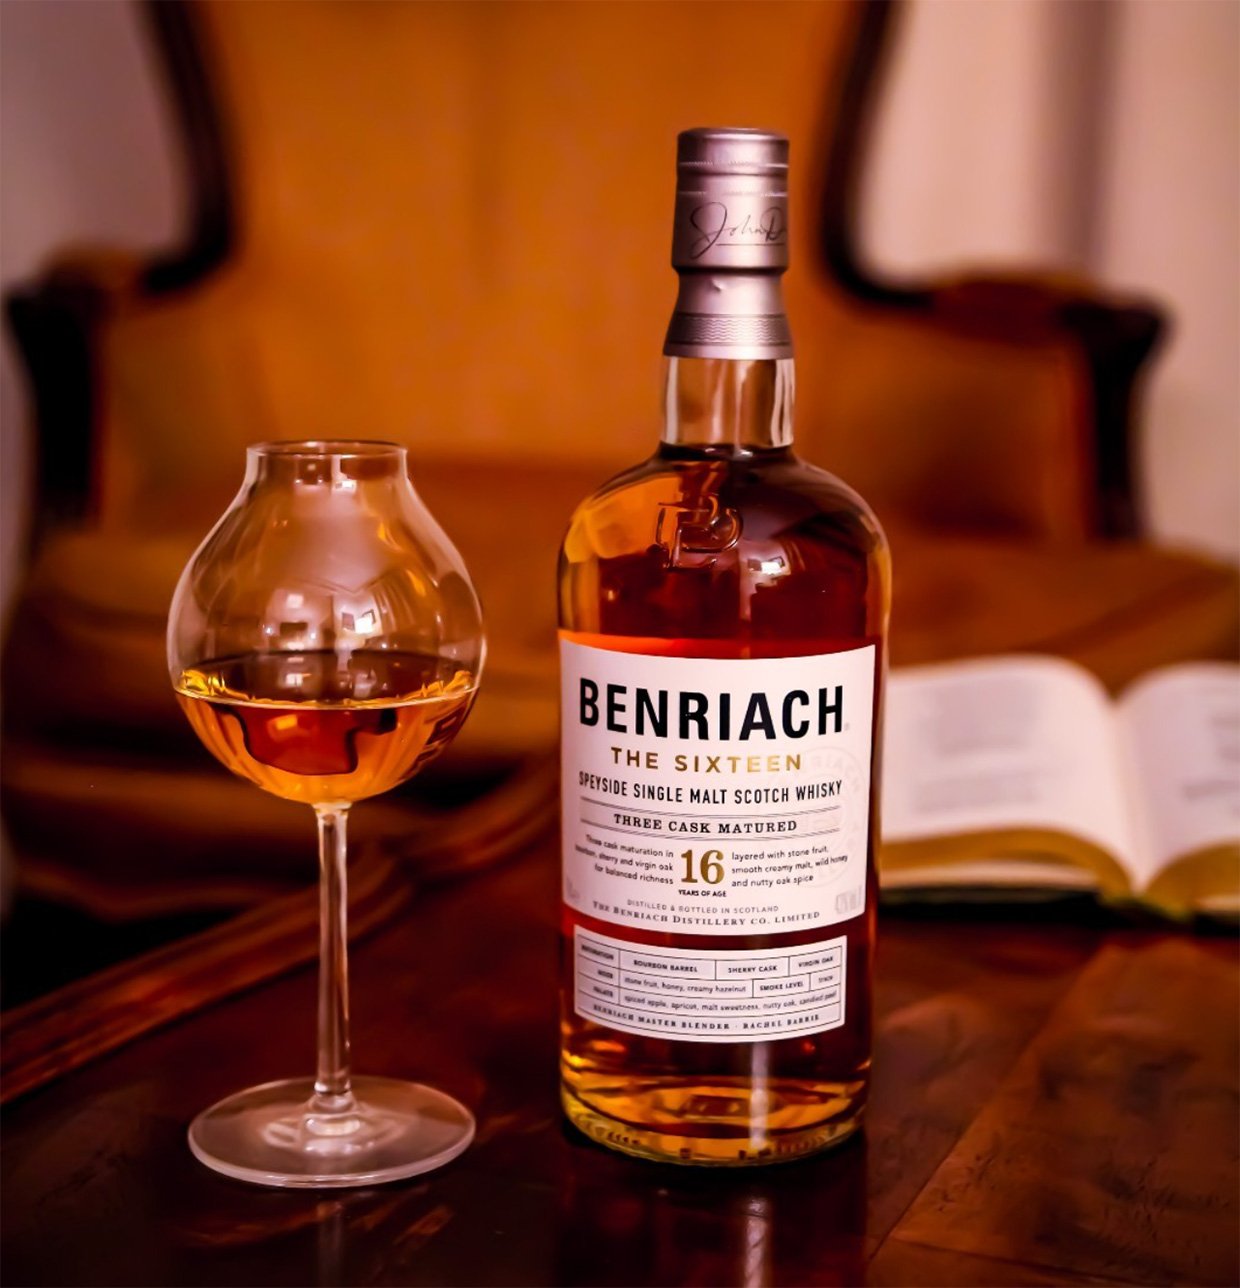 Benriach The Sixteen Single Malt Scotch